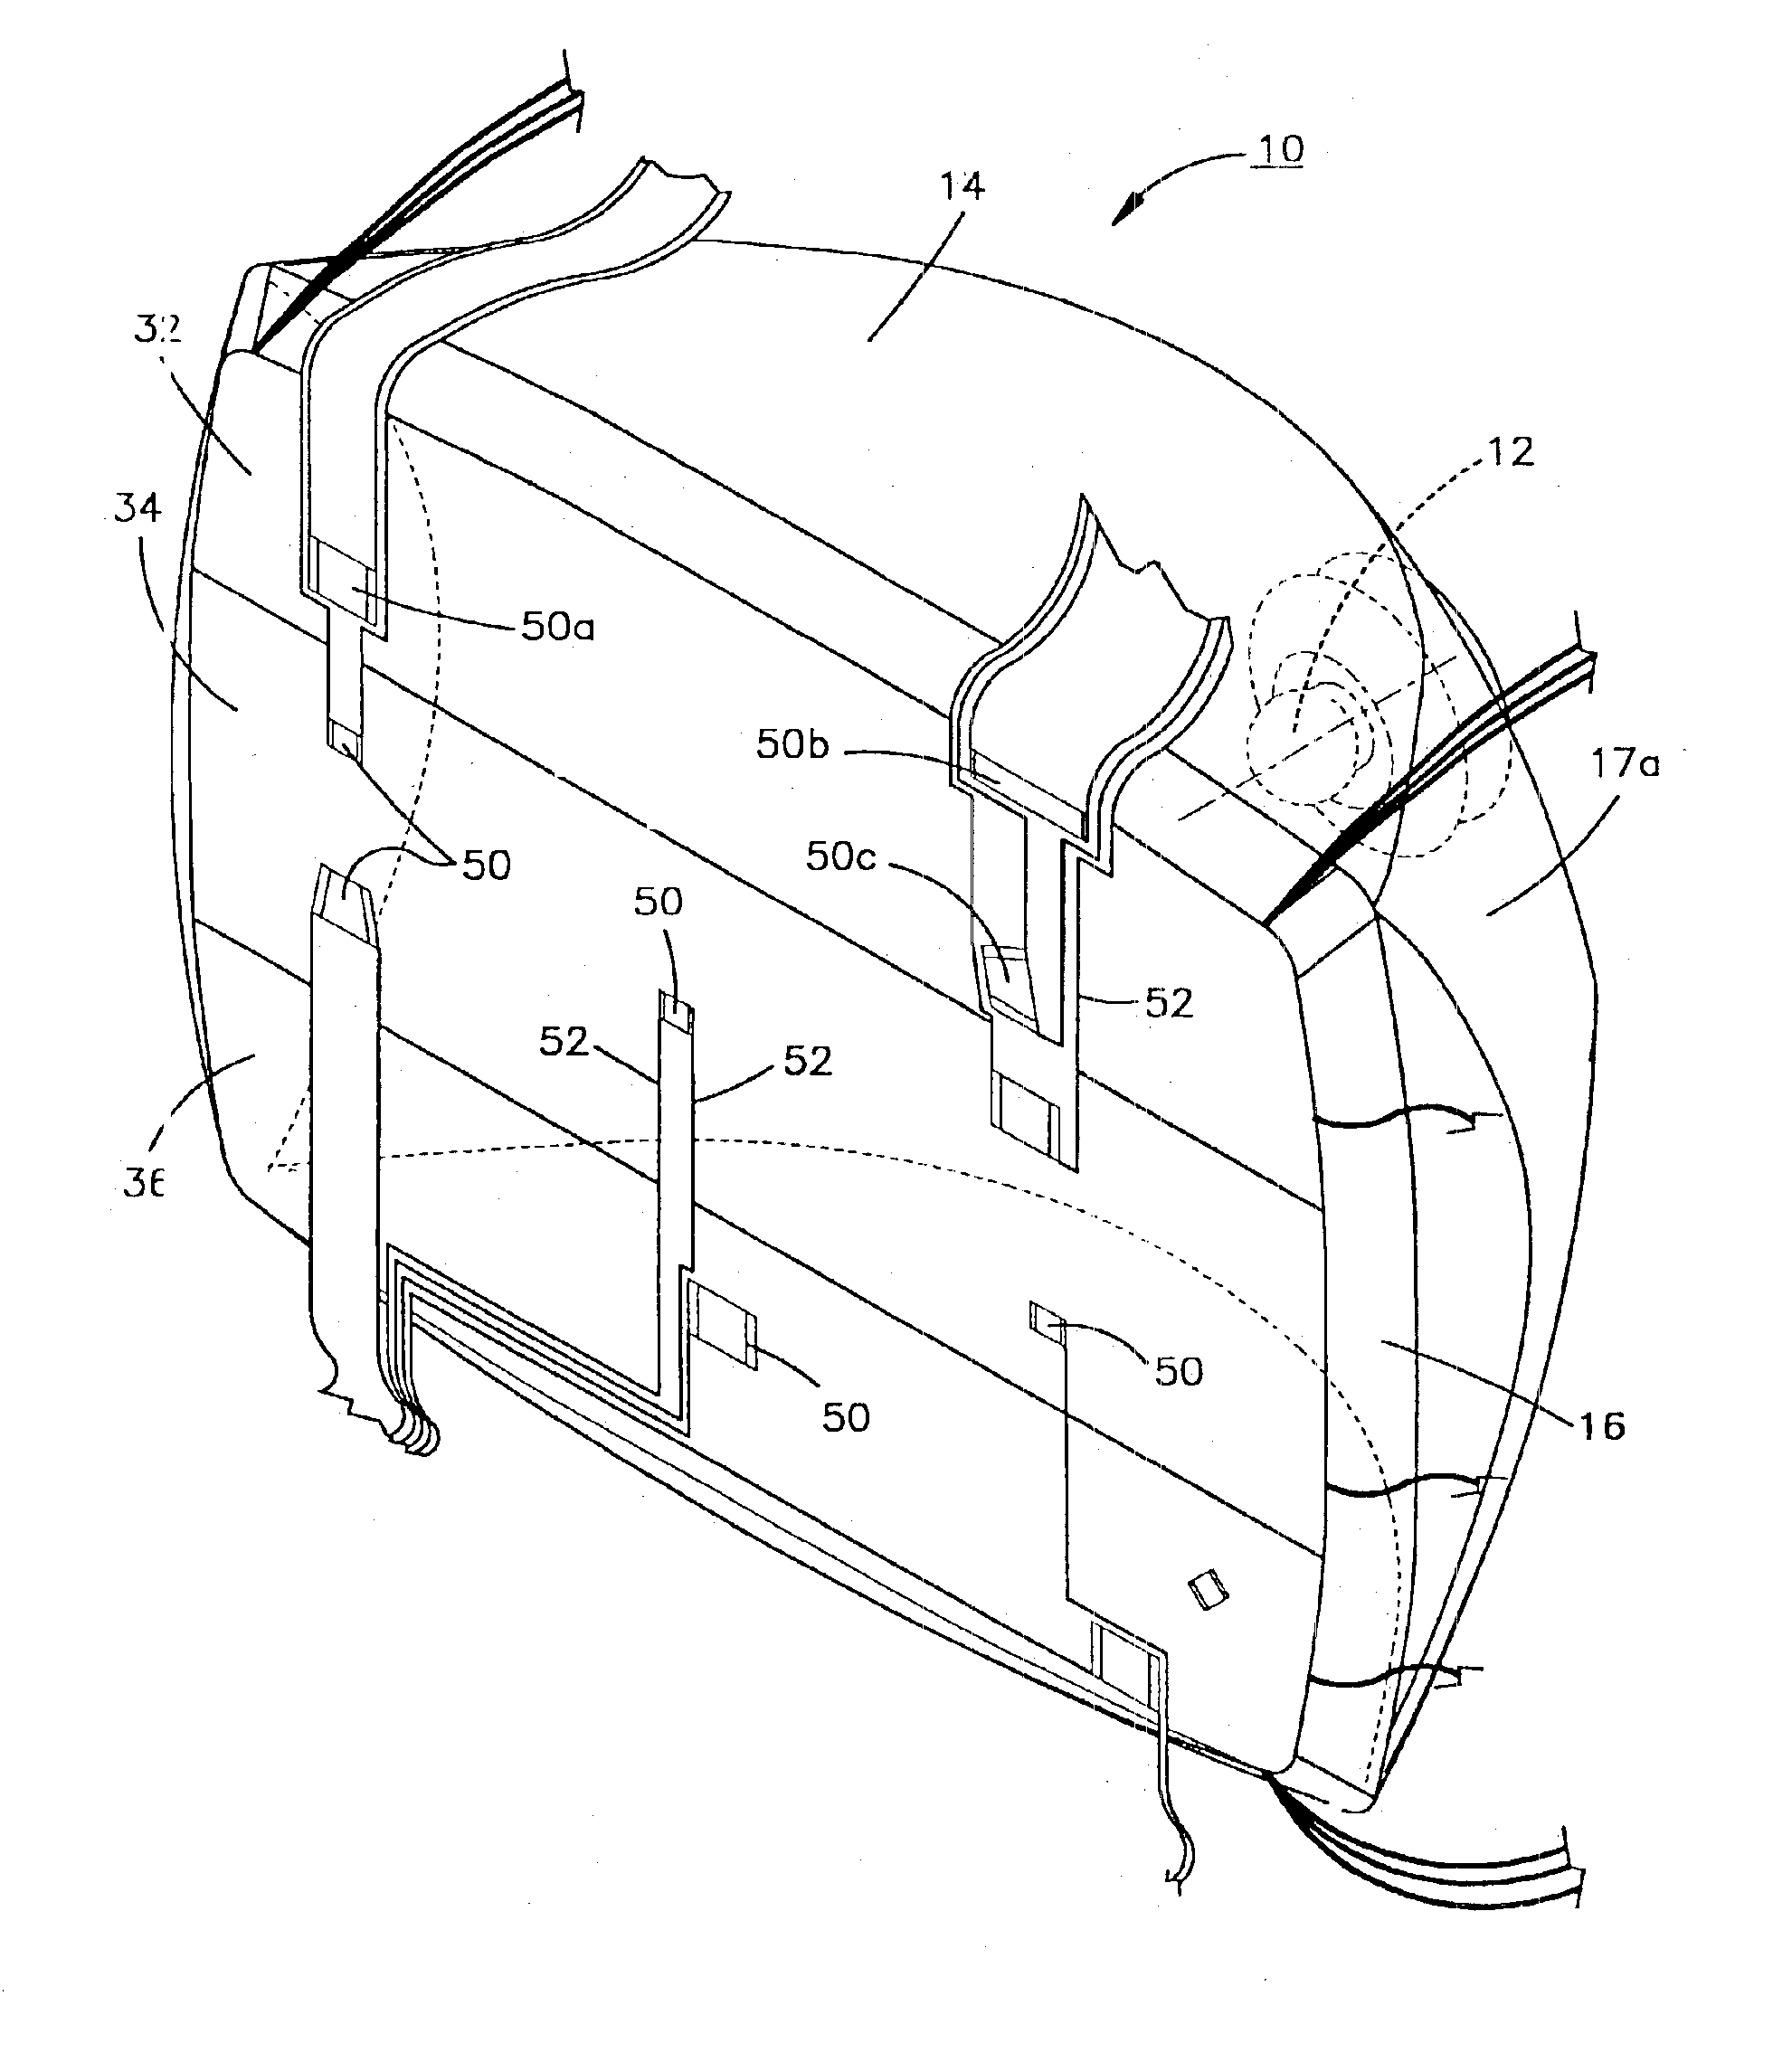 Lamp masking method and apparatus